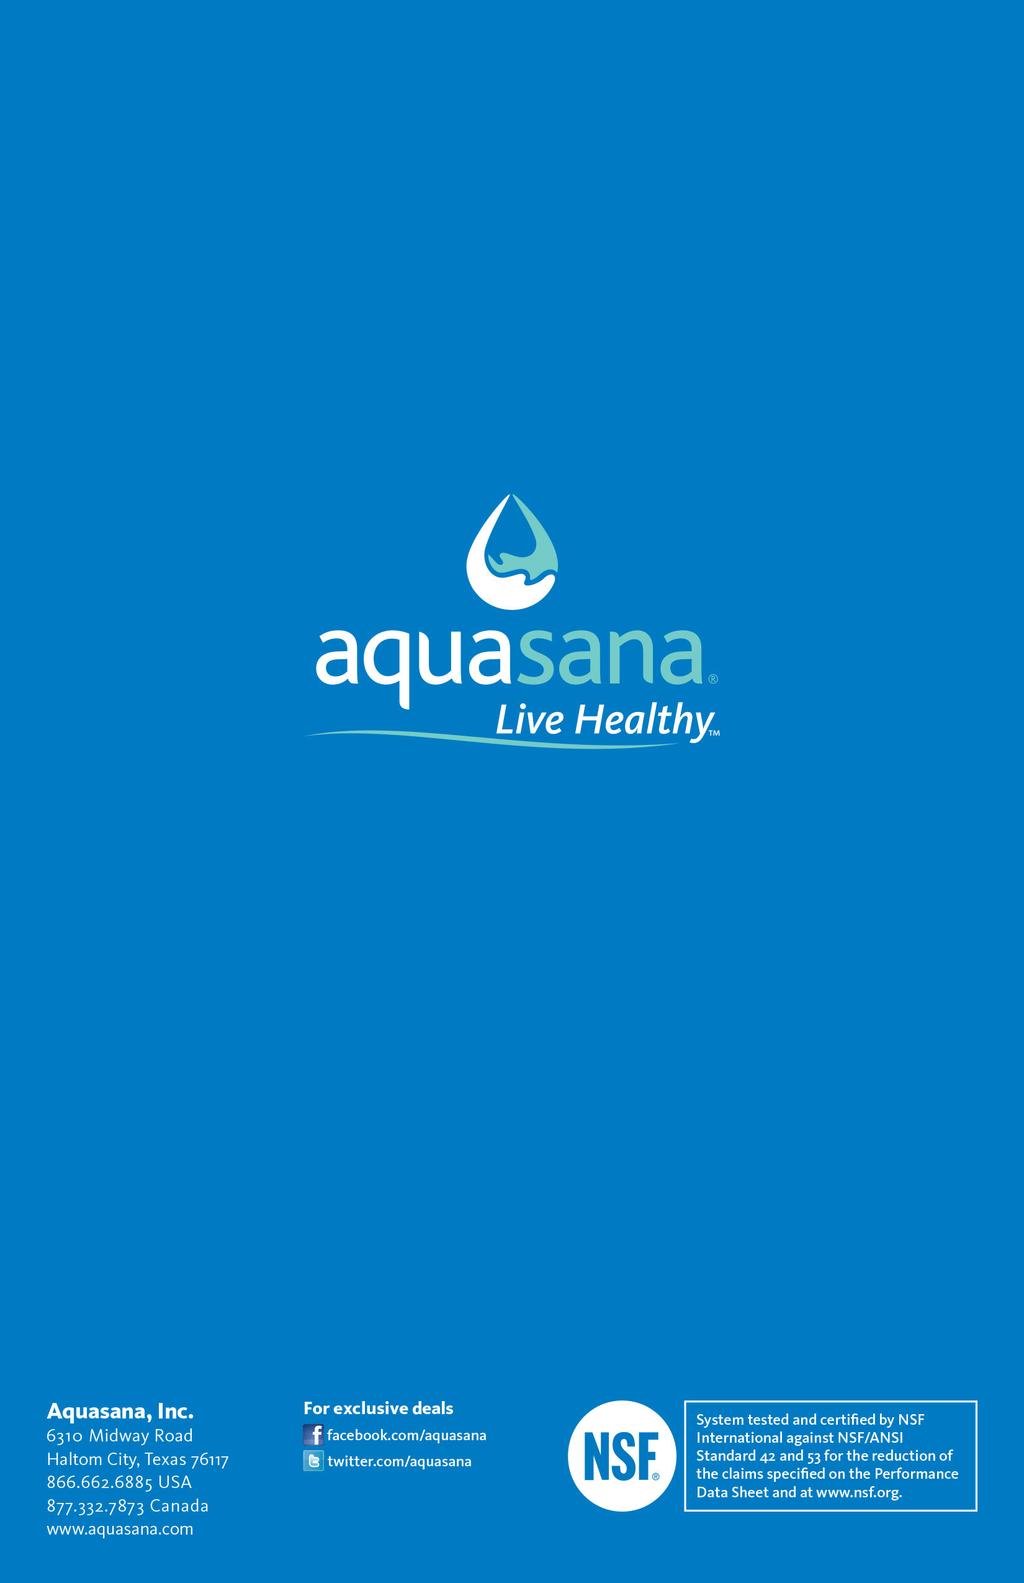 aquasana Live Healthy: Aquasana, Inc. 6310 Midway Rad Haltm City, Texas 76117 866.662.6885 USA 877.332.7873 Canada www.aquasana.cm Fr exclusive deals f facebk.